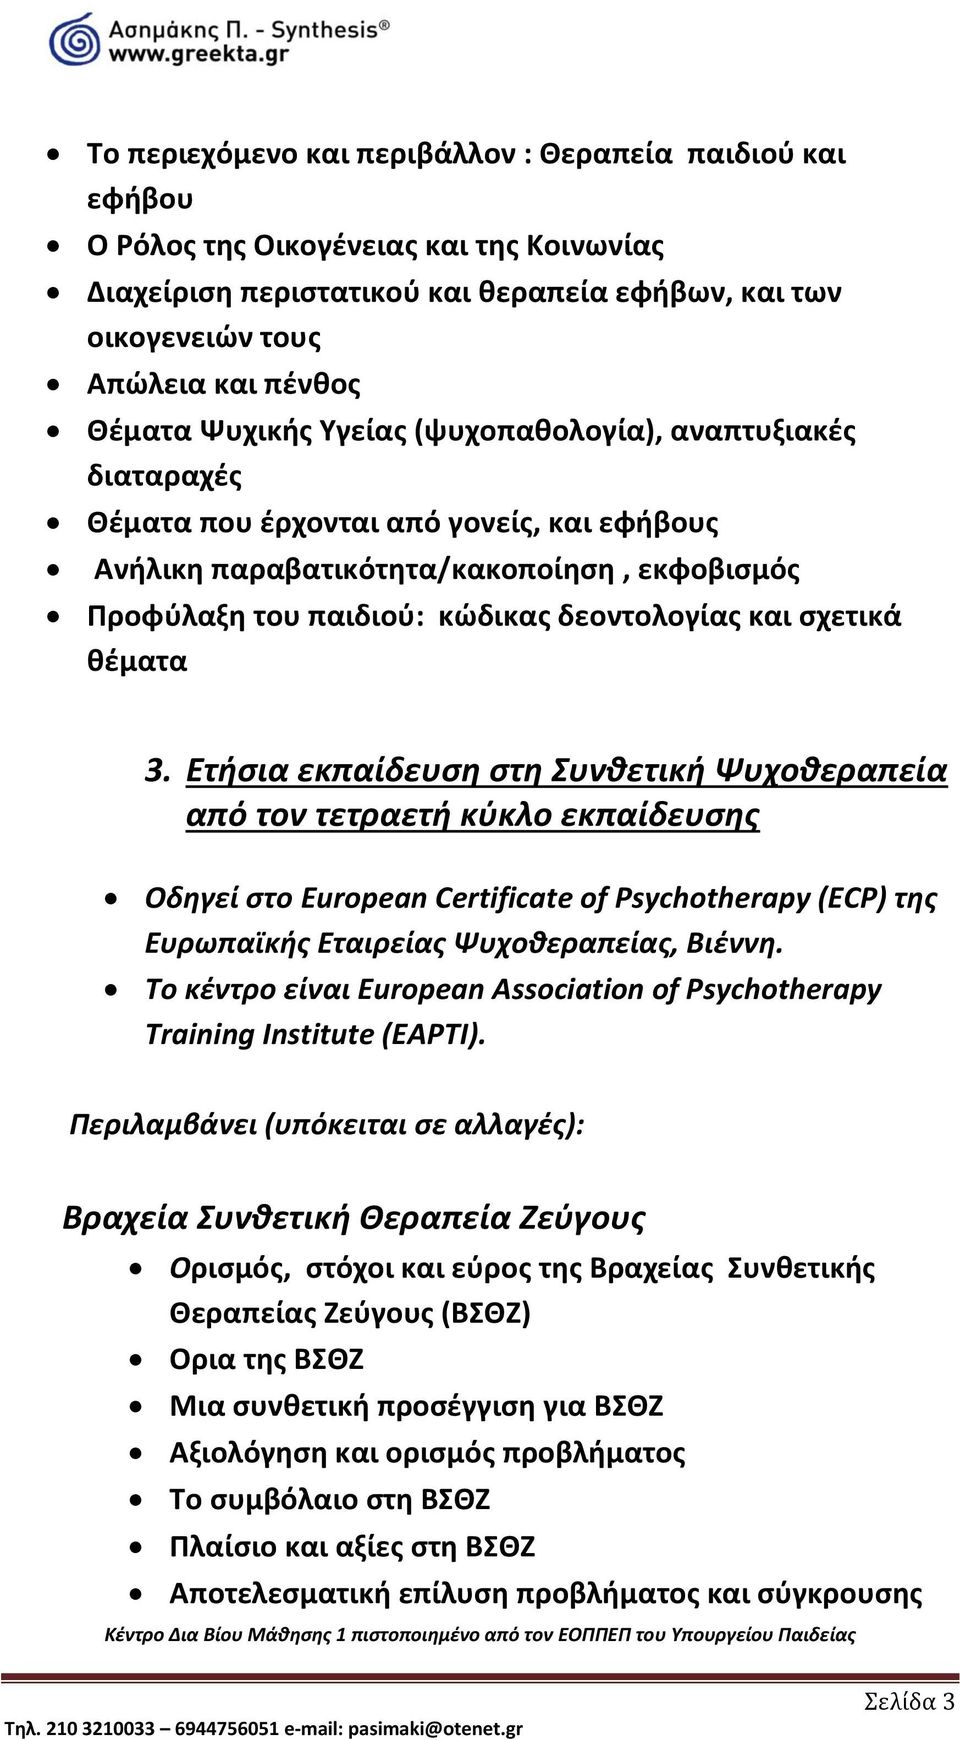 σχετικά θέματα 3. Ετήσια εκπαίδευση στη Συνθετική Ψυχοθεραπεία από τον τετραετή κύκλο εκπαίδευσης Οδηγεί στο European Certificate of Psychotherapy (ECP) της Ευρωπαϊκής Εταιρείας Ψυχοθεραπείας, Βιέννη.